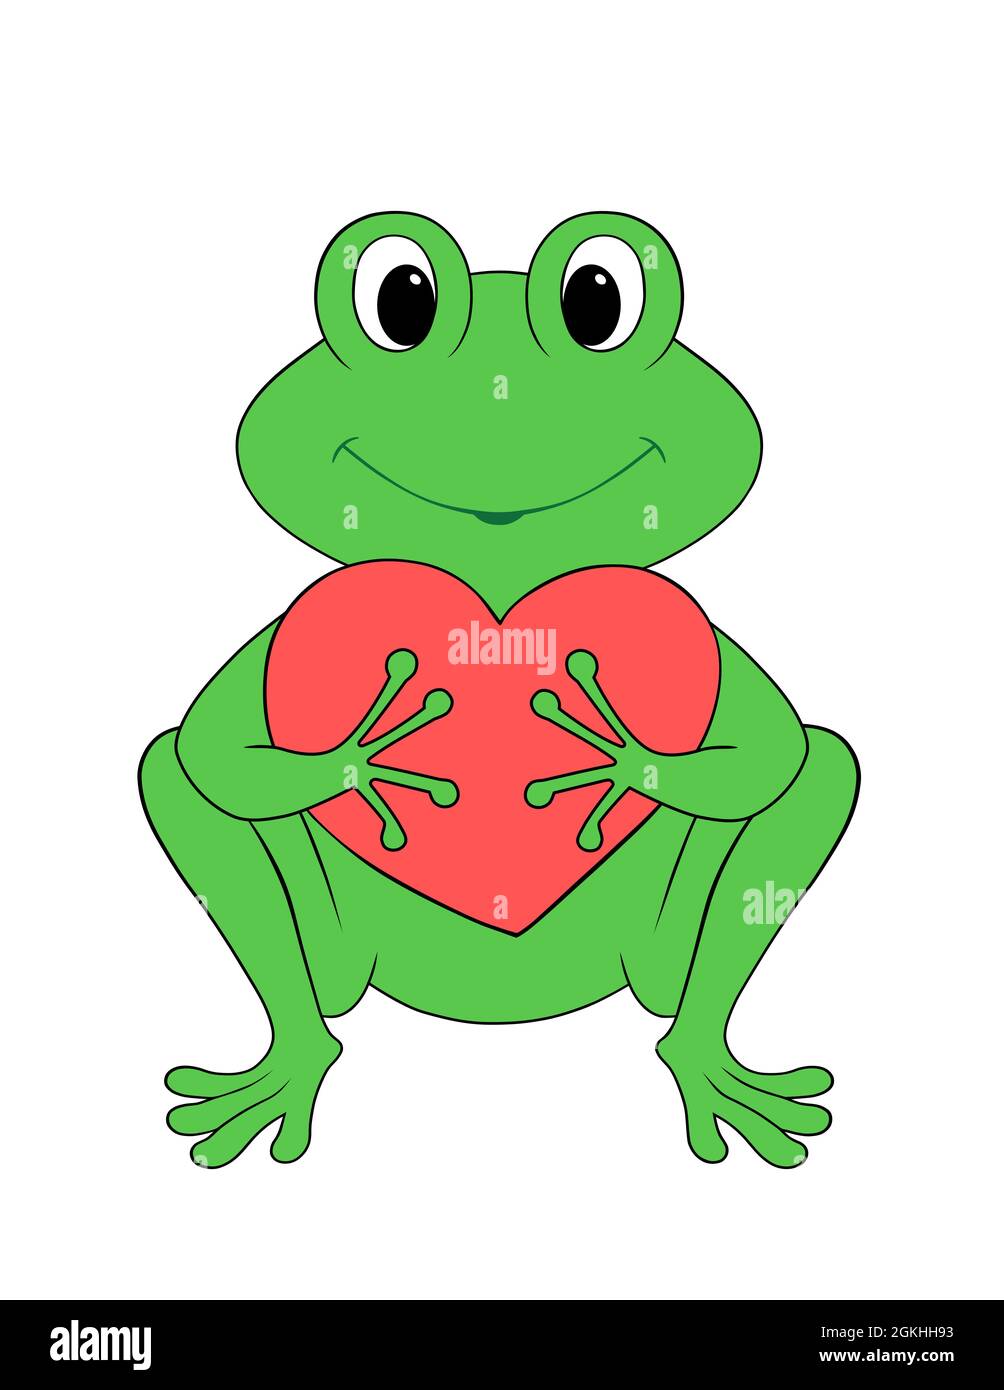 Niedlichen grünen Frosch hält ein rotes Herz, glücklich Cartoon-Charakter  auf weißem Hintergrund isoliert Stockfotografie - Alamy